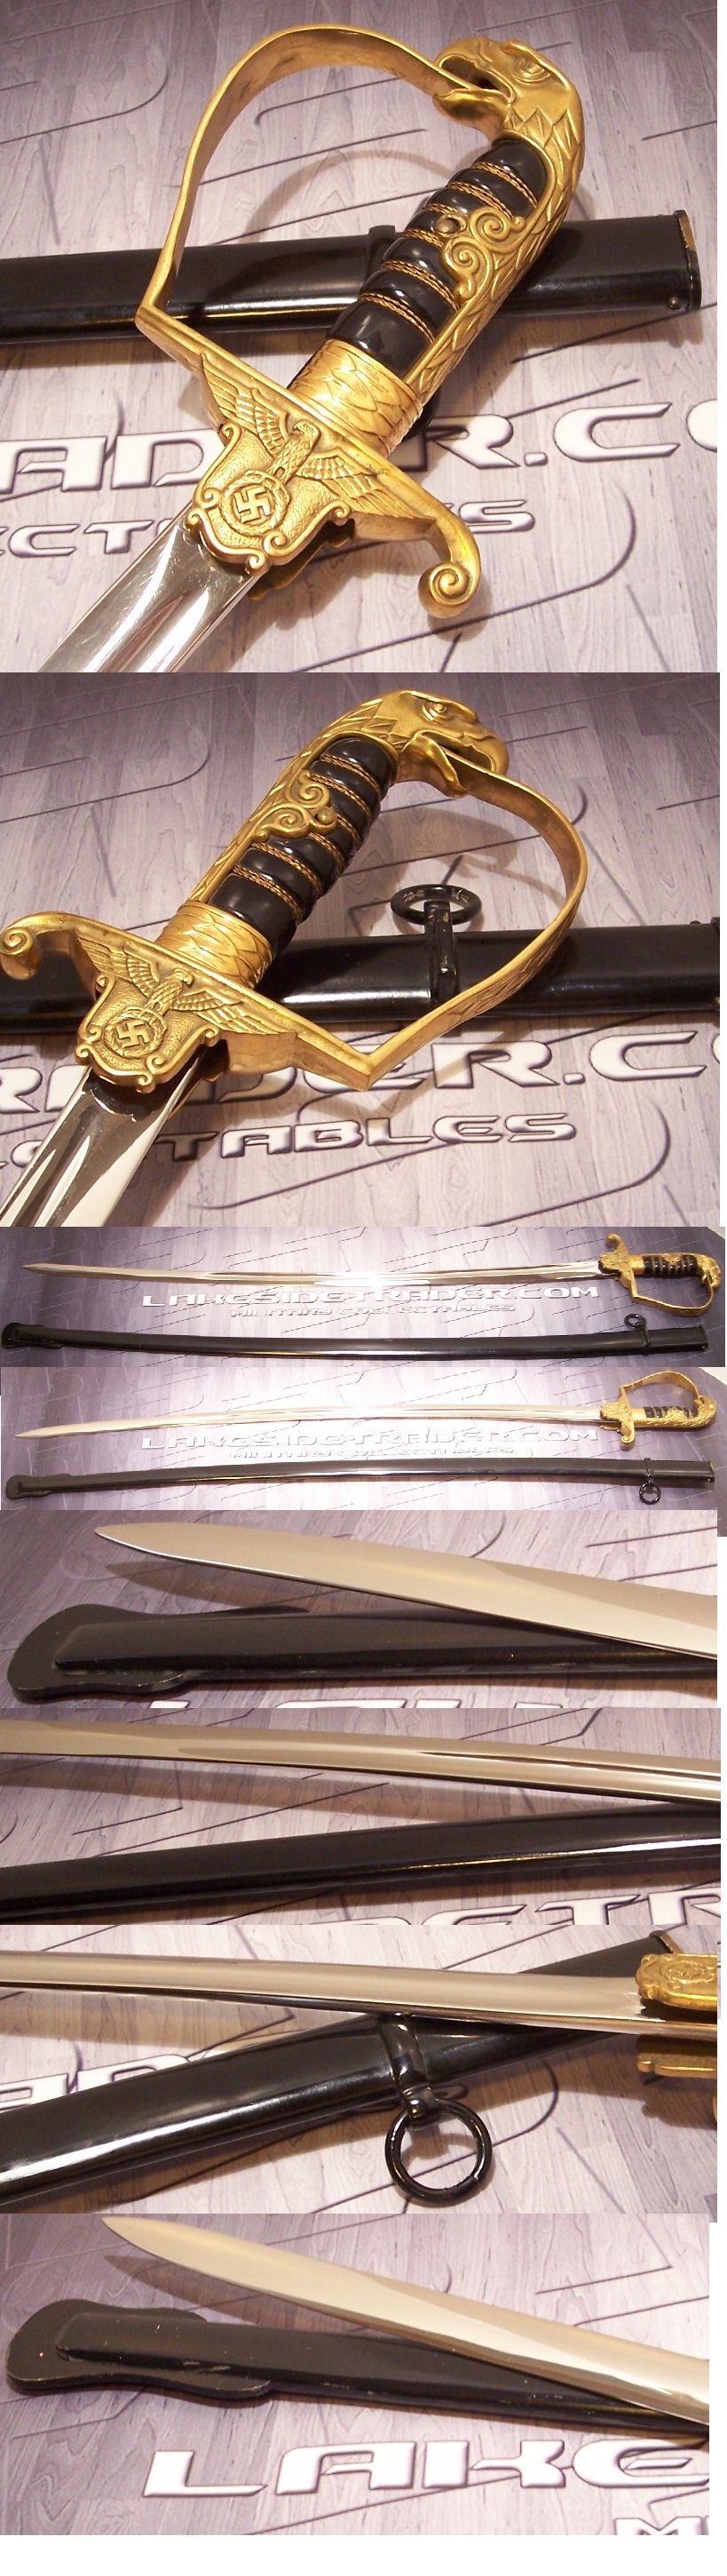 Killer Eickhorn Prison Official Sword